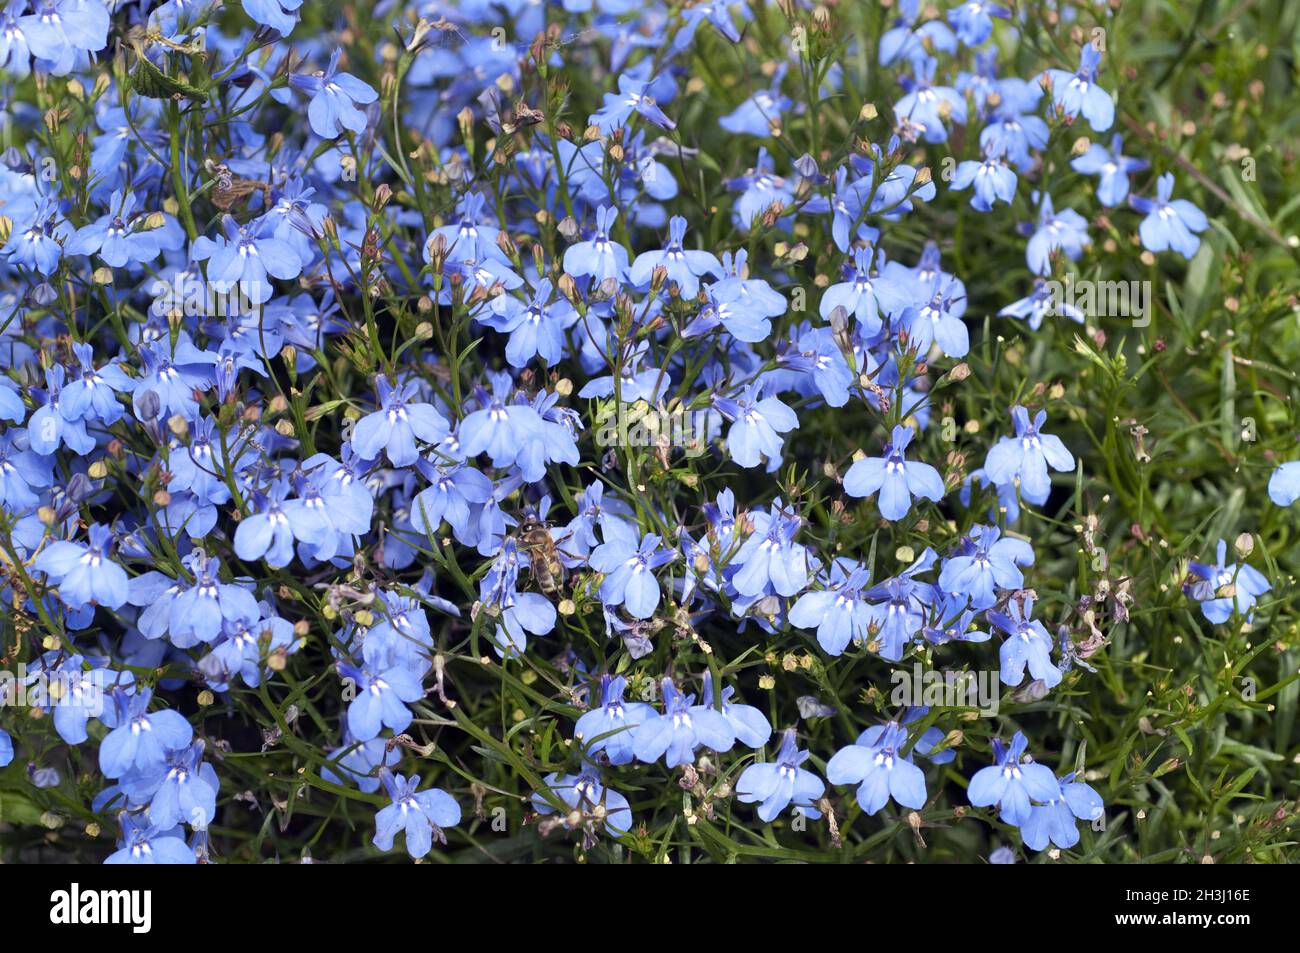 Lobelia, erinus, blue, lobelia, Stock Photo